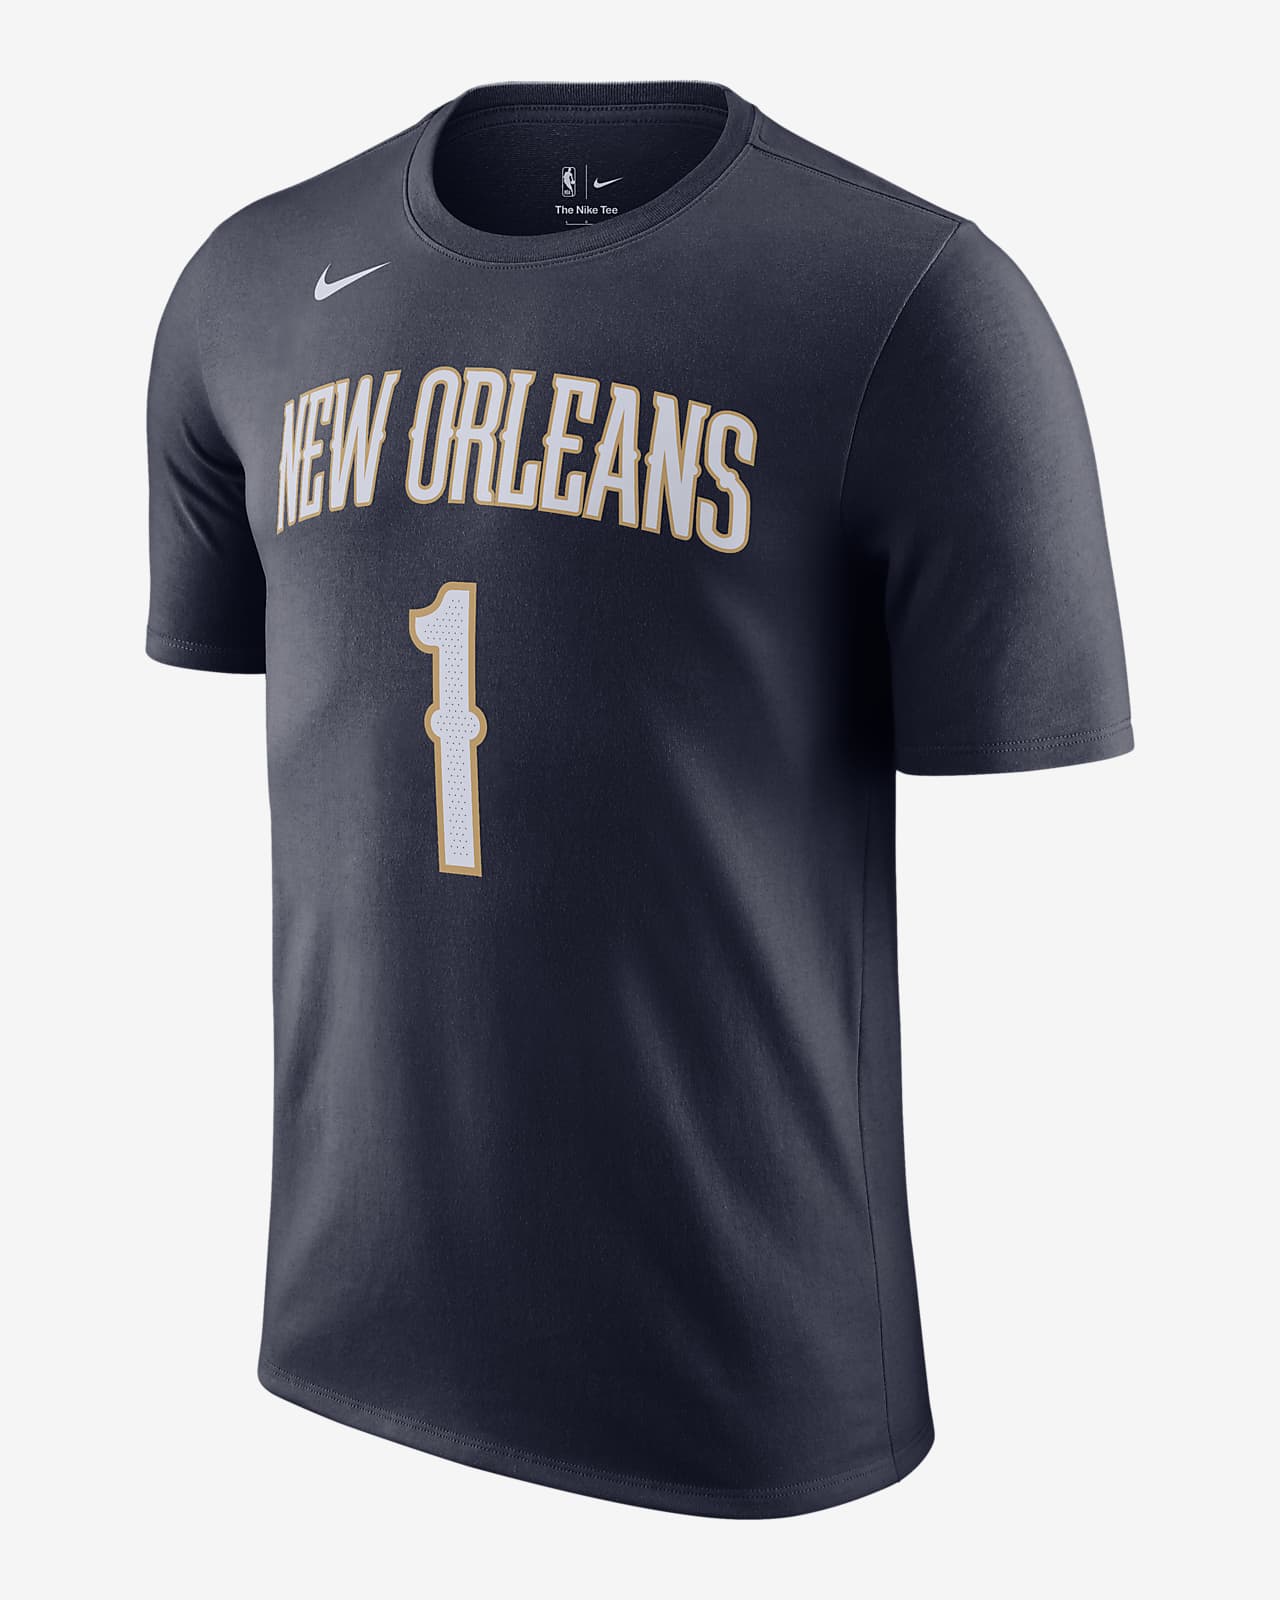 Orleans Pelicans Men's NBA Nike.com